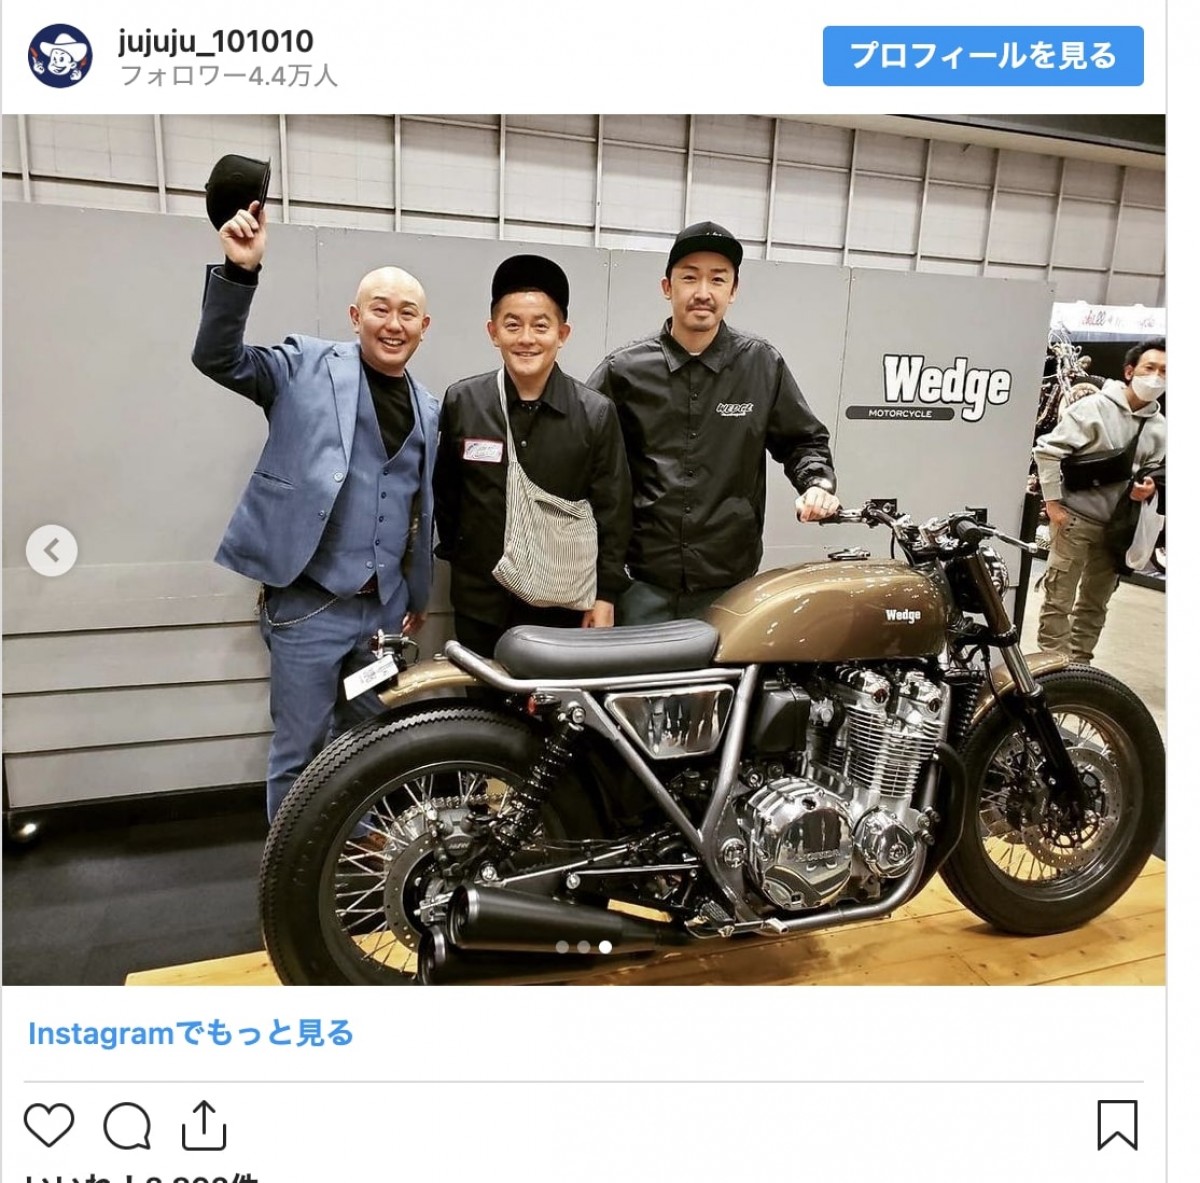 ヒロミ、スピードワゴン井戸田の総額500万円超バイクに痛烈ダメ出し「振り切ってないよね」